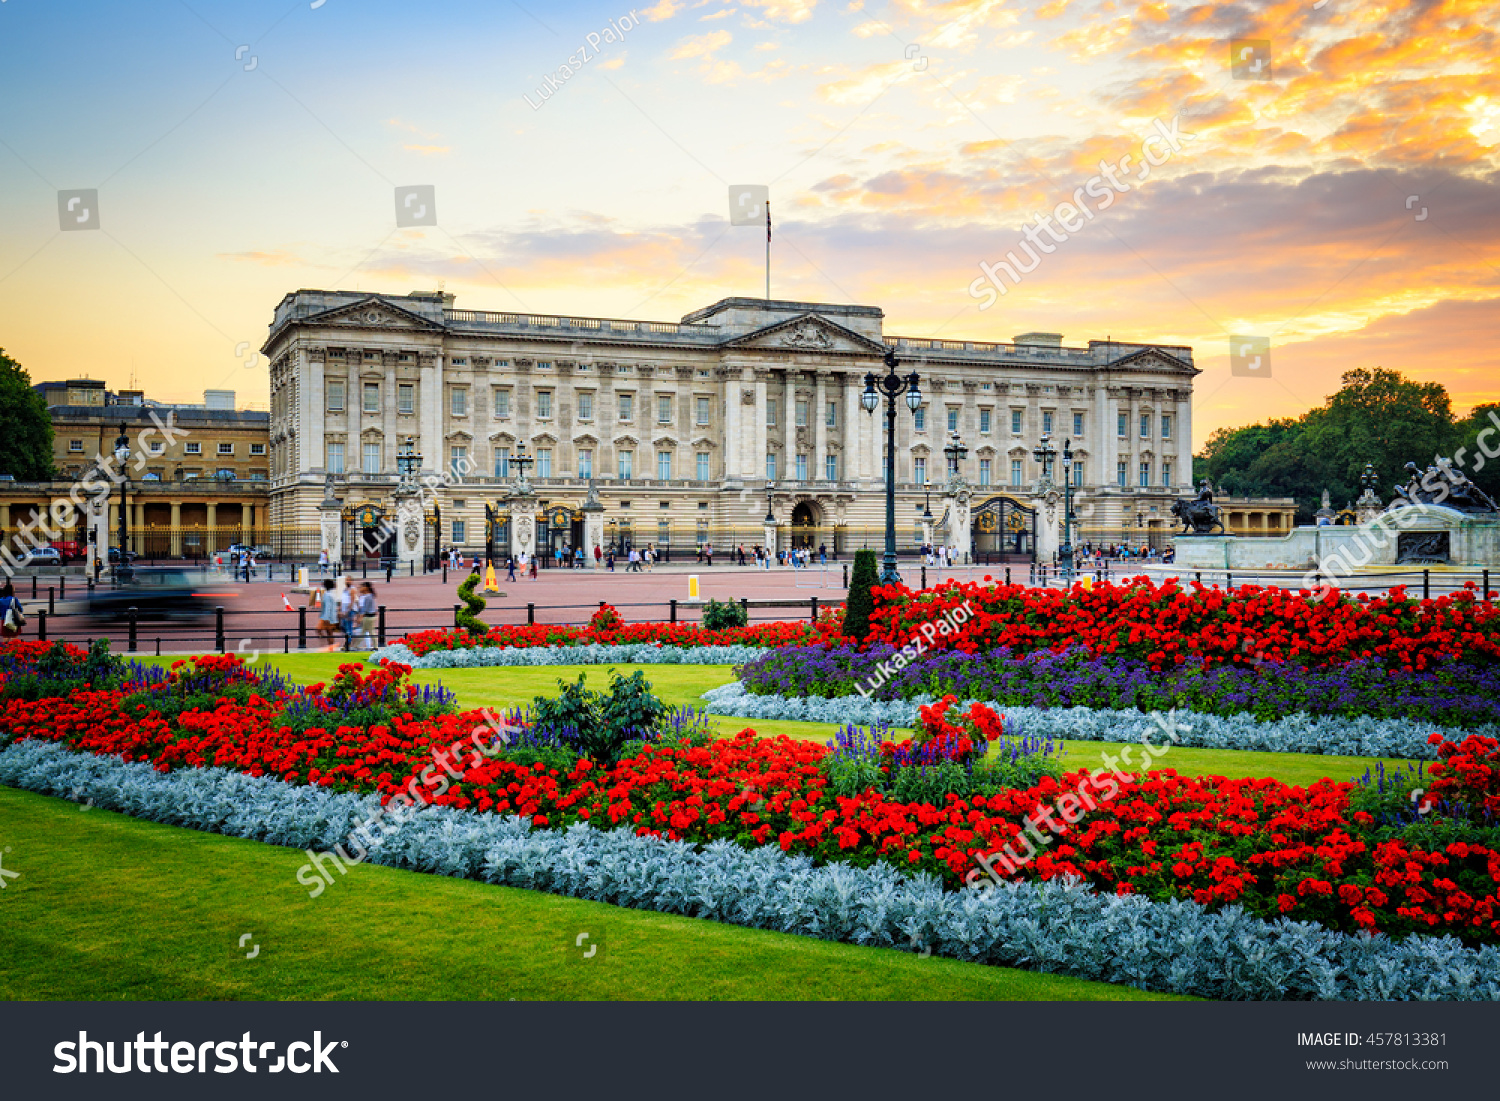 Buckingham Palace in London, United Kingdom. #457813381